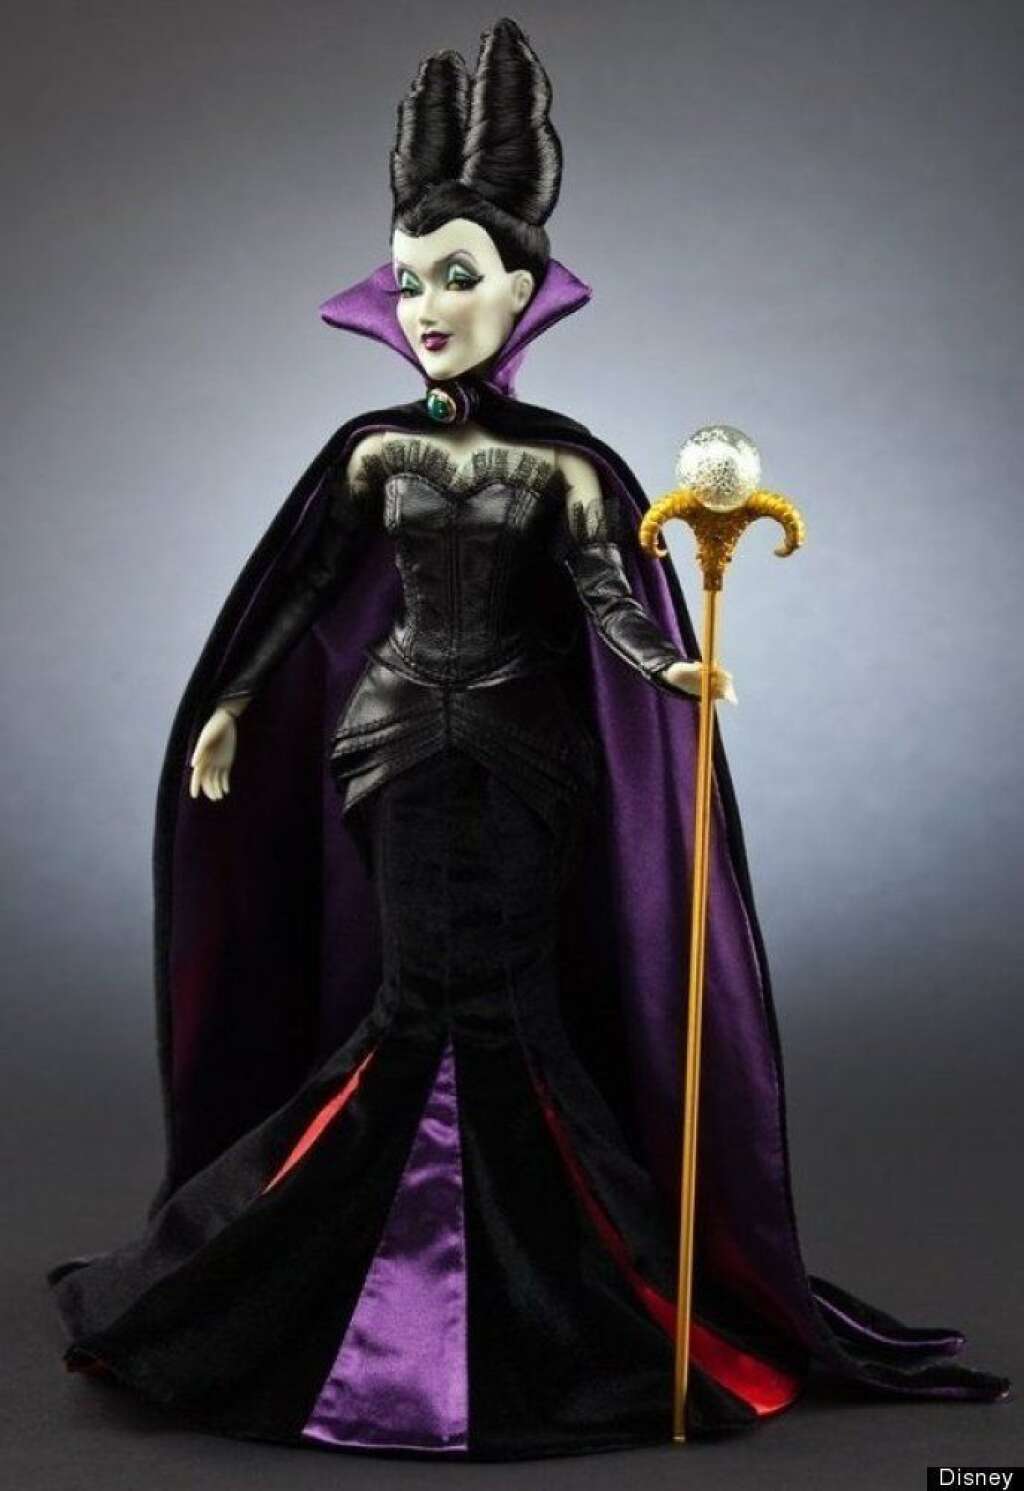 Maleficent Doll - via <a href="http://pinterest.com/pin/72831718944510647/" target="_hplink">Pinterest</a>